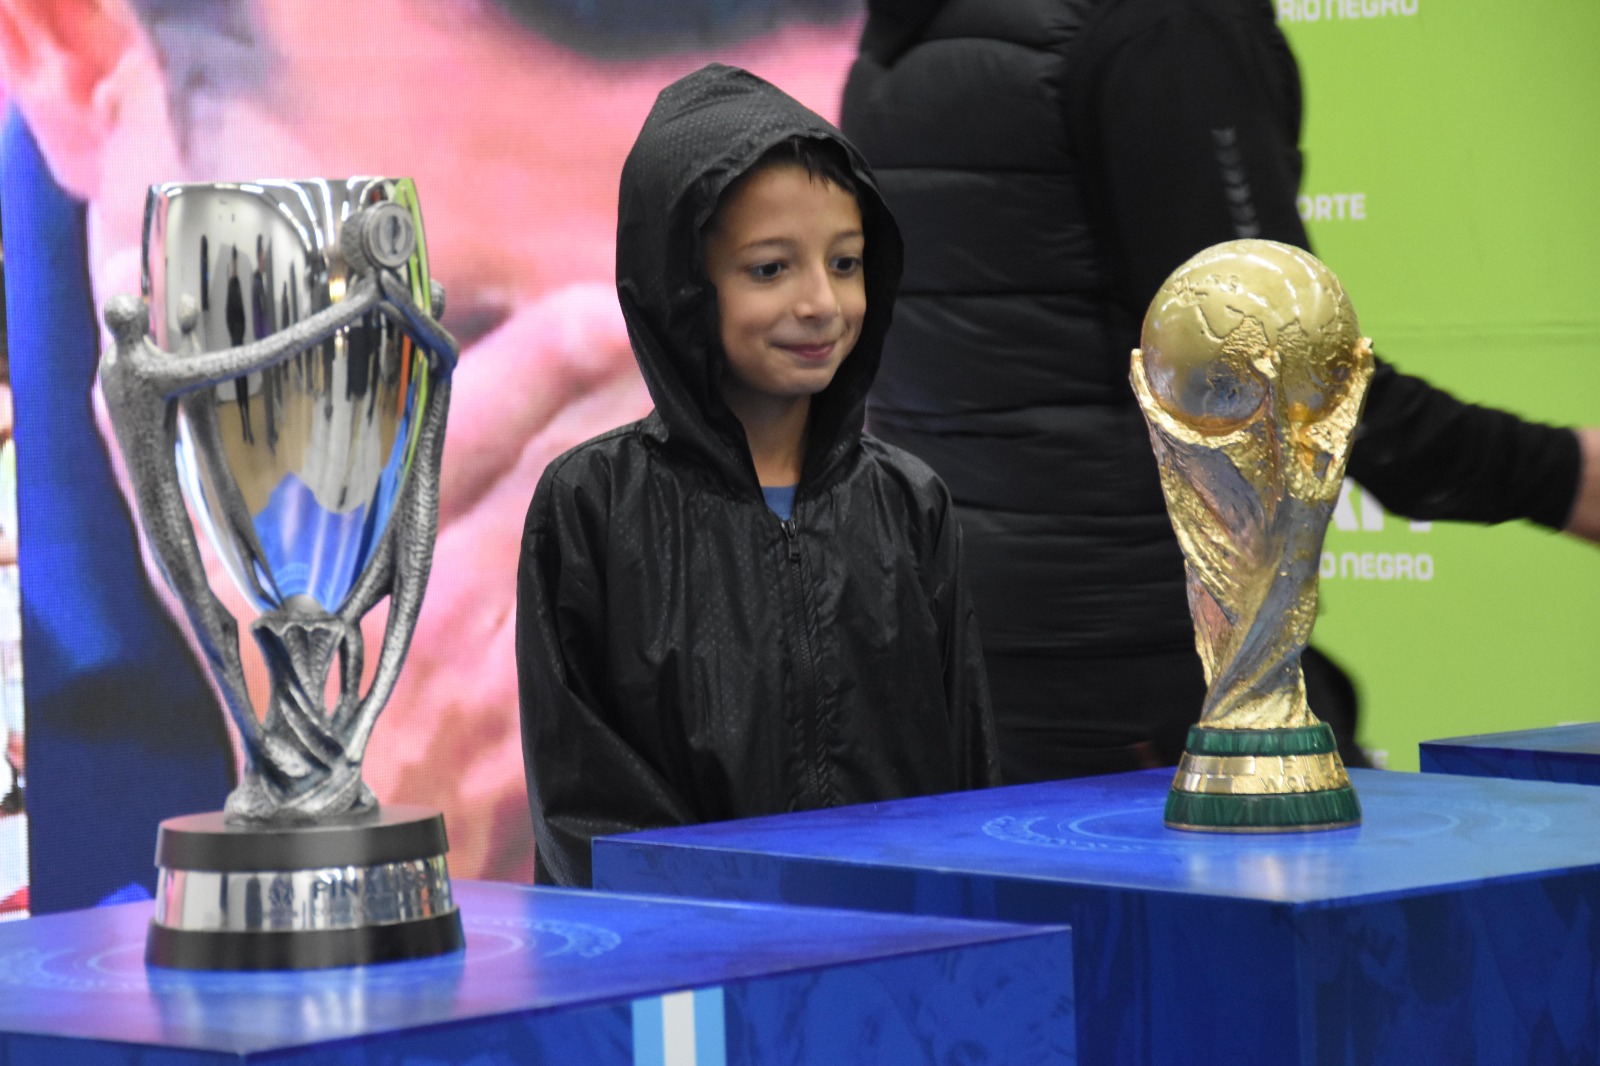 Los chicos disfrutaron de cerca la Copa del Mundo que alzó Lionel Messi. (Foto: Alejandro Carnevale)